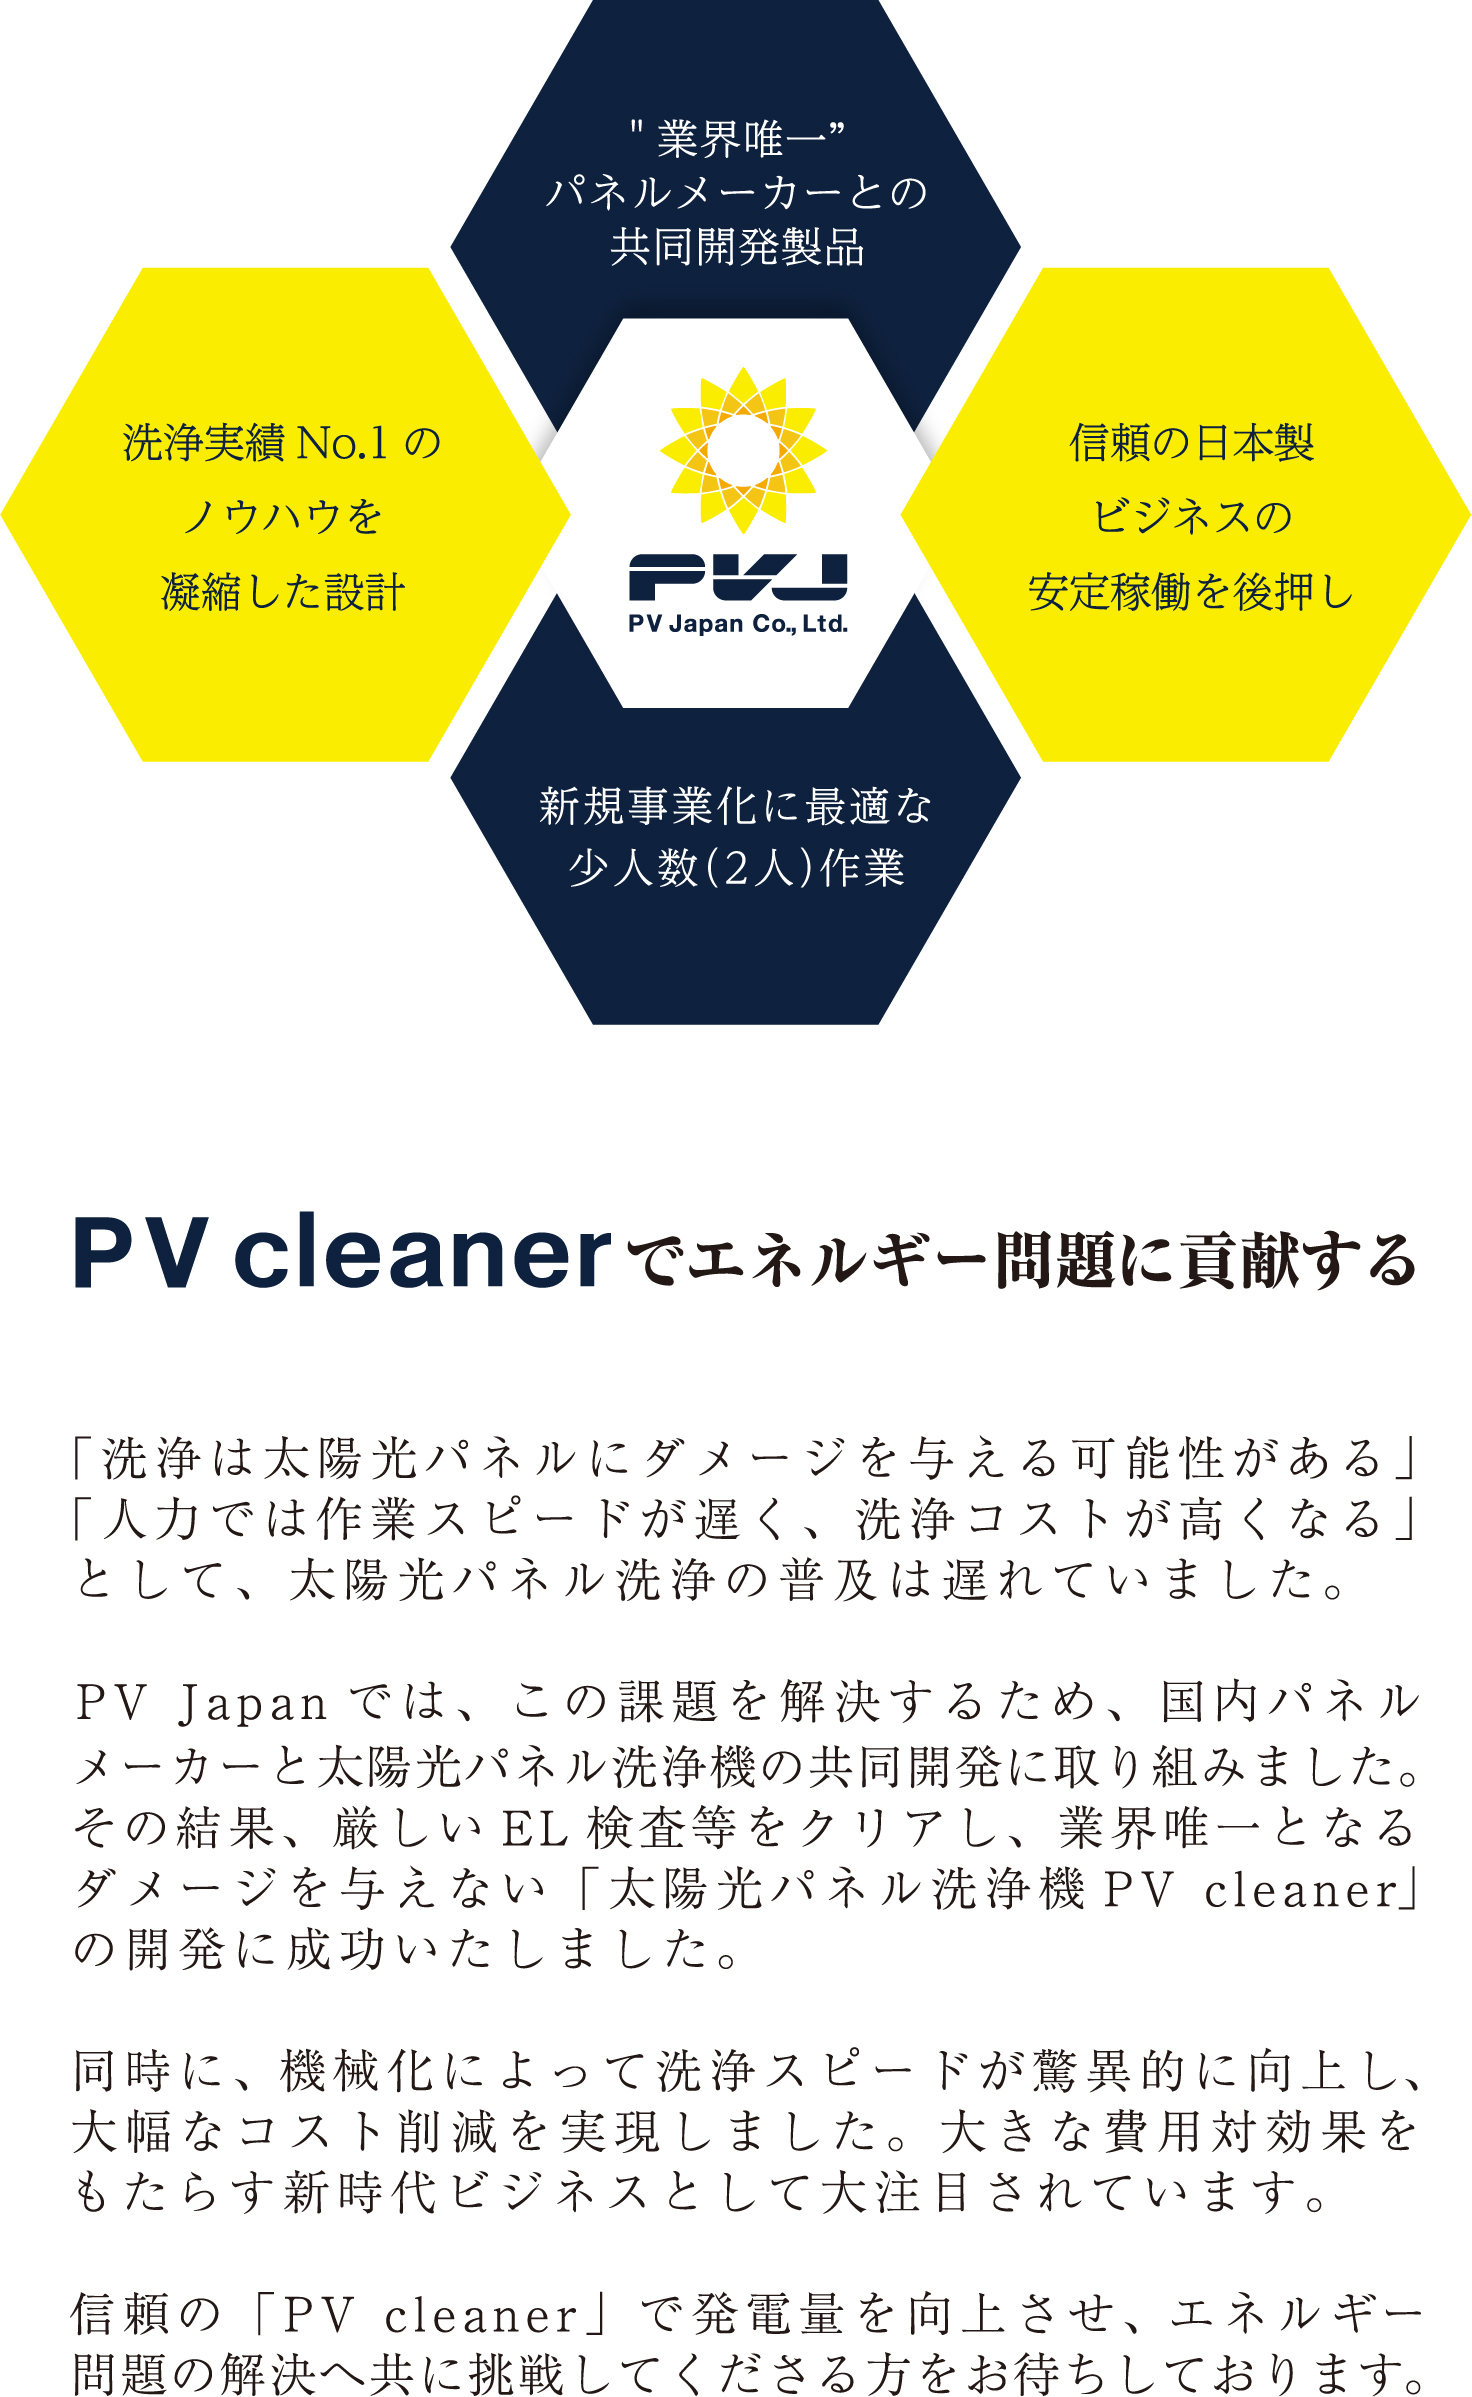 PV Japanで電力問題に貢献する